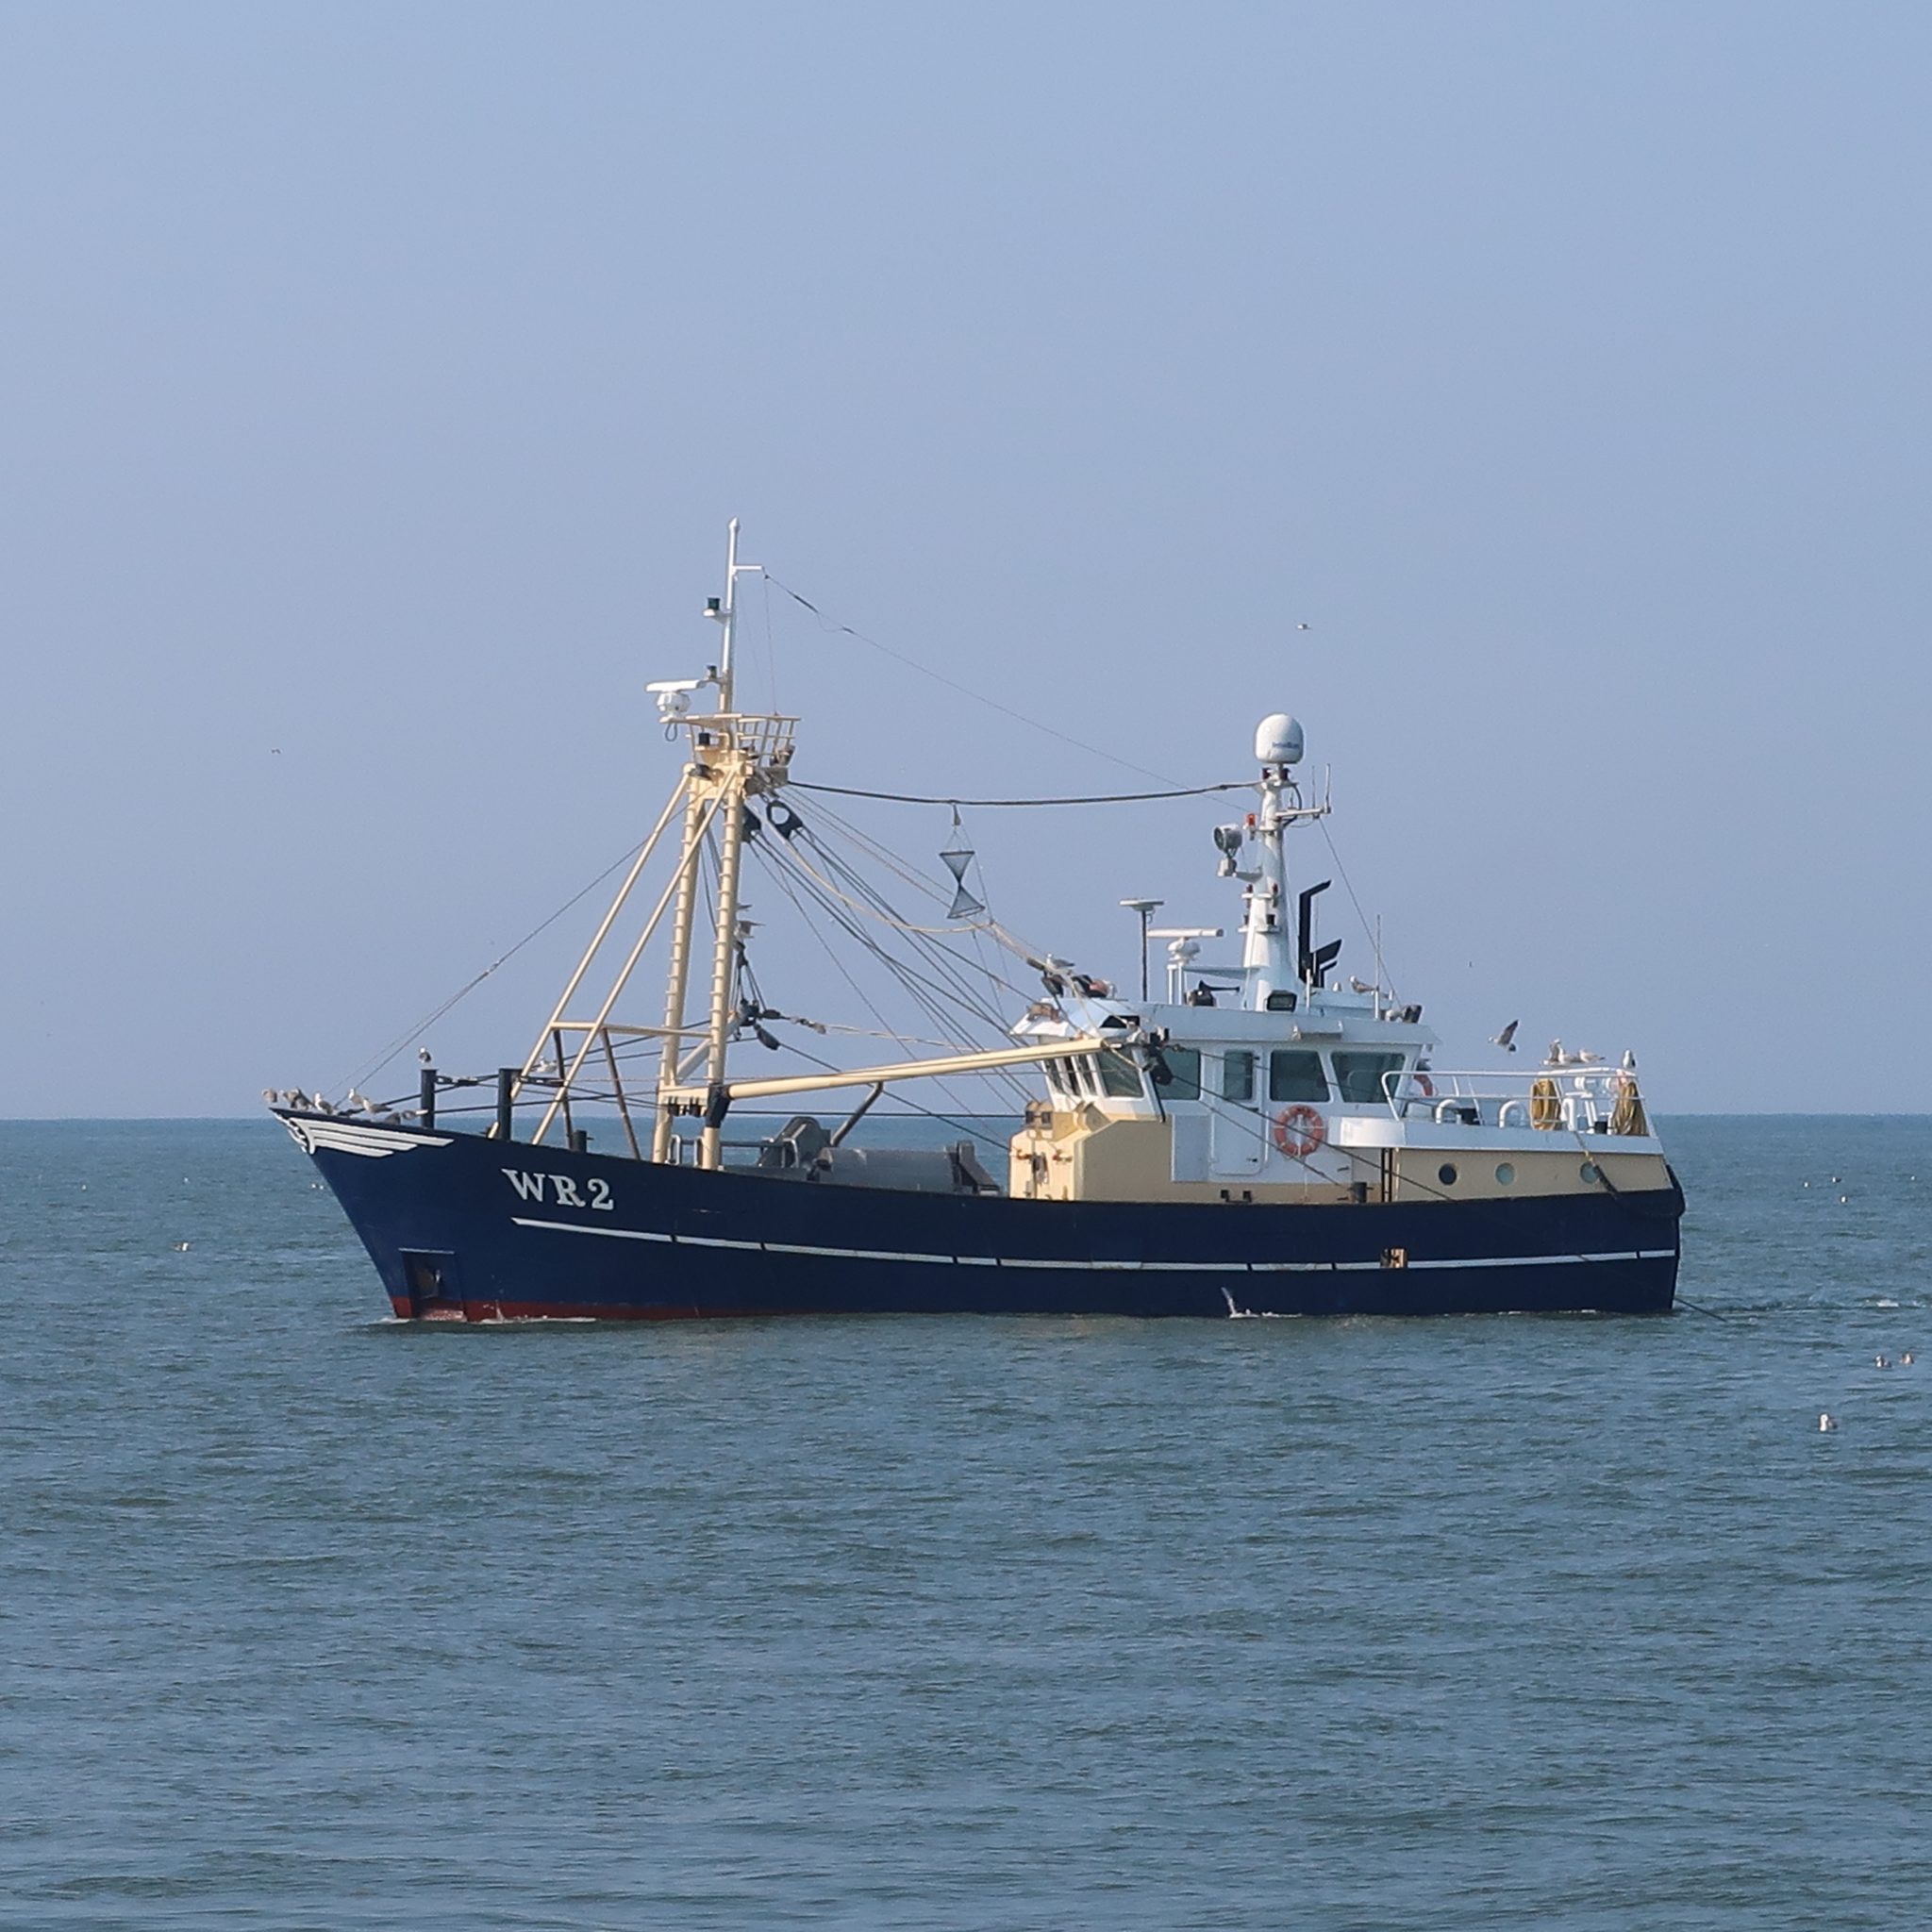 De WR-2 van Patrick de Visser zit voor de kust van Huisduinen achter garnalen aan. (Foto W.M. den Heijer)